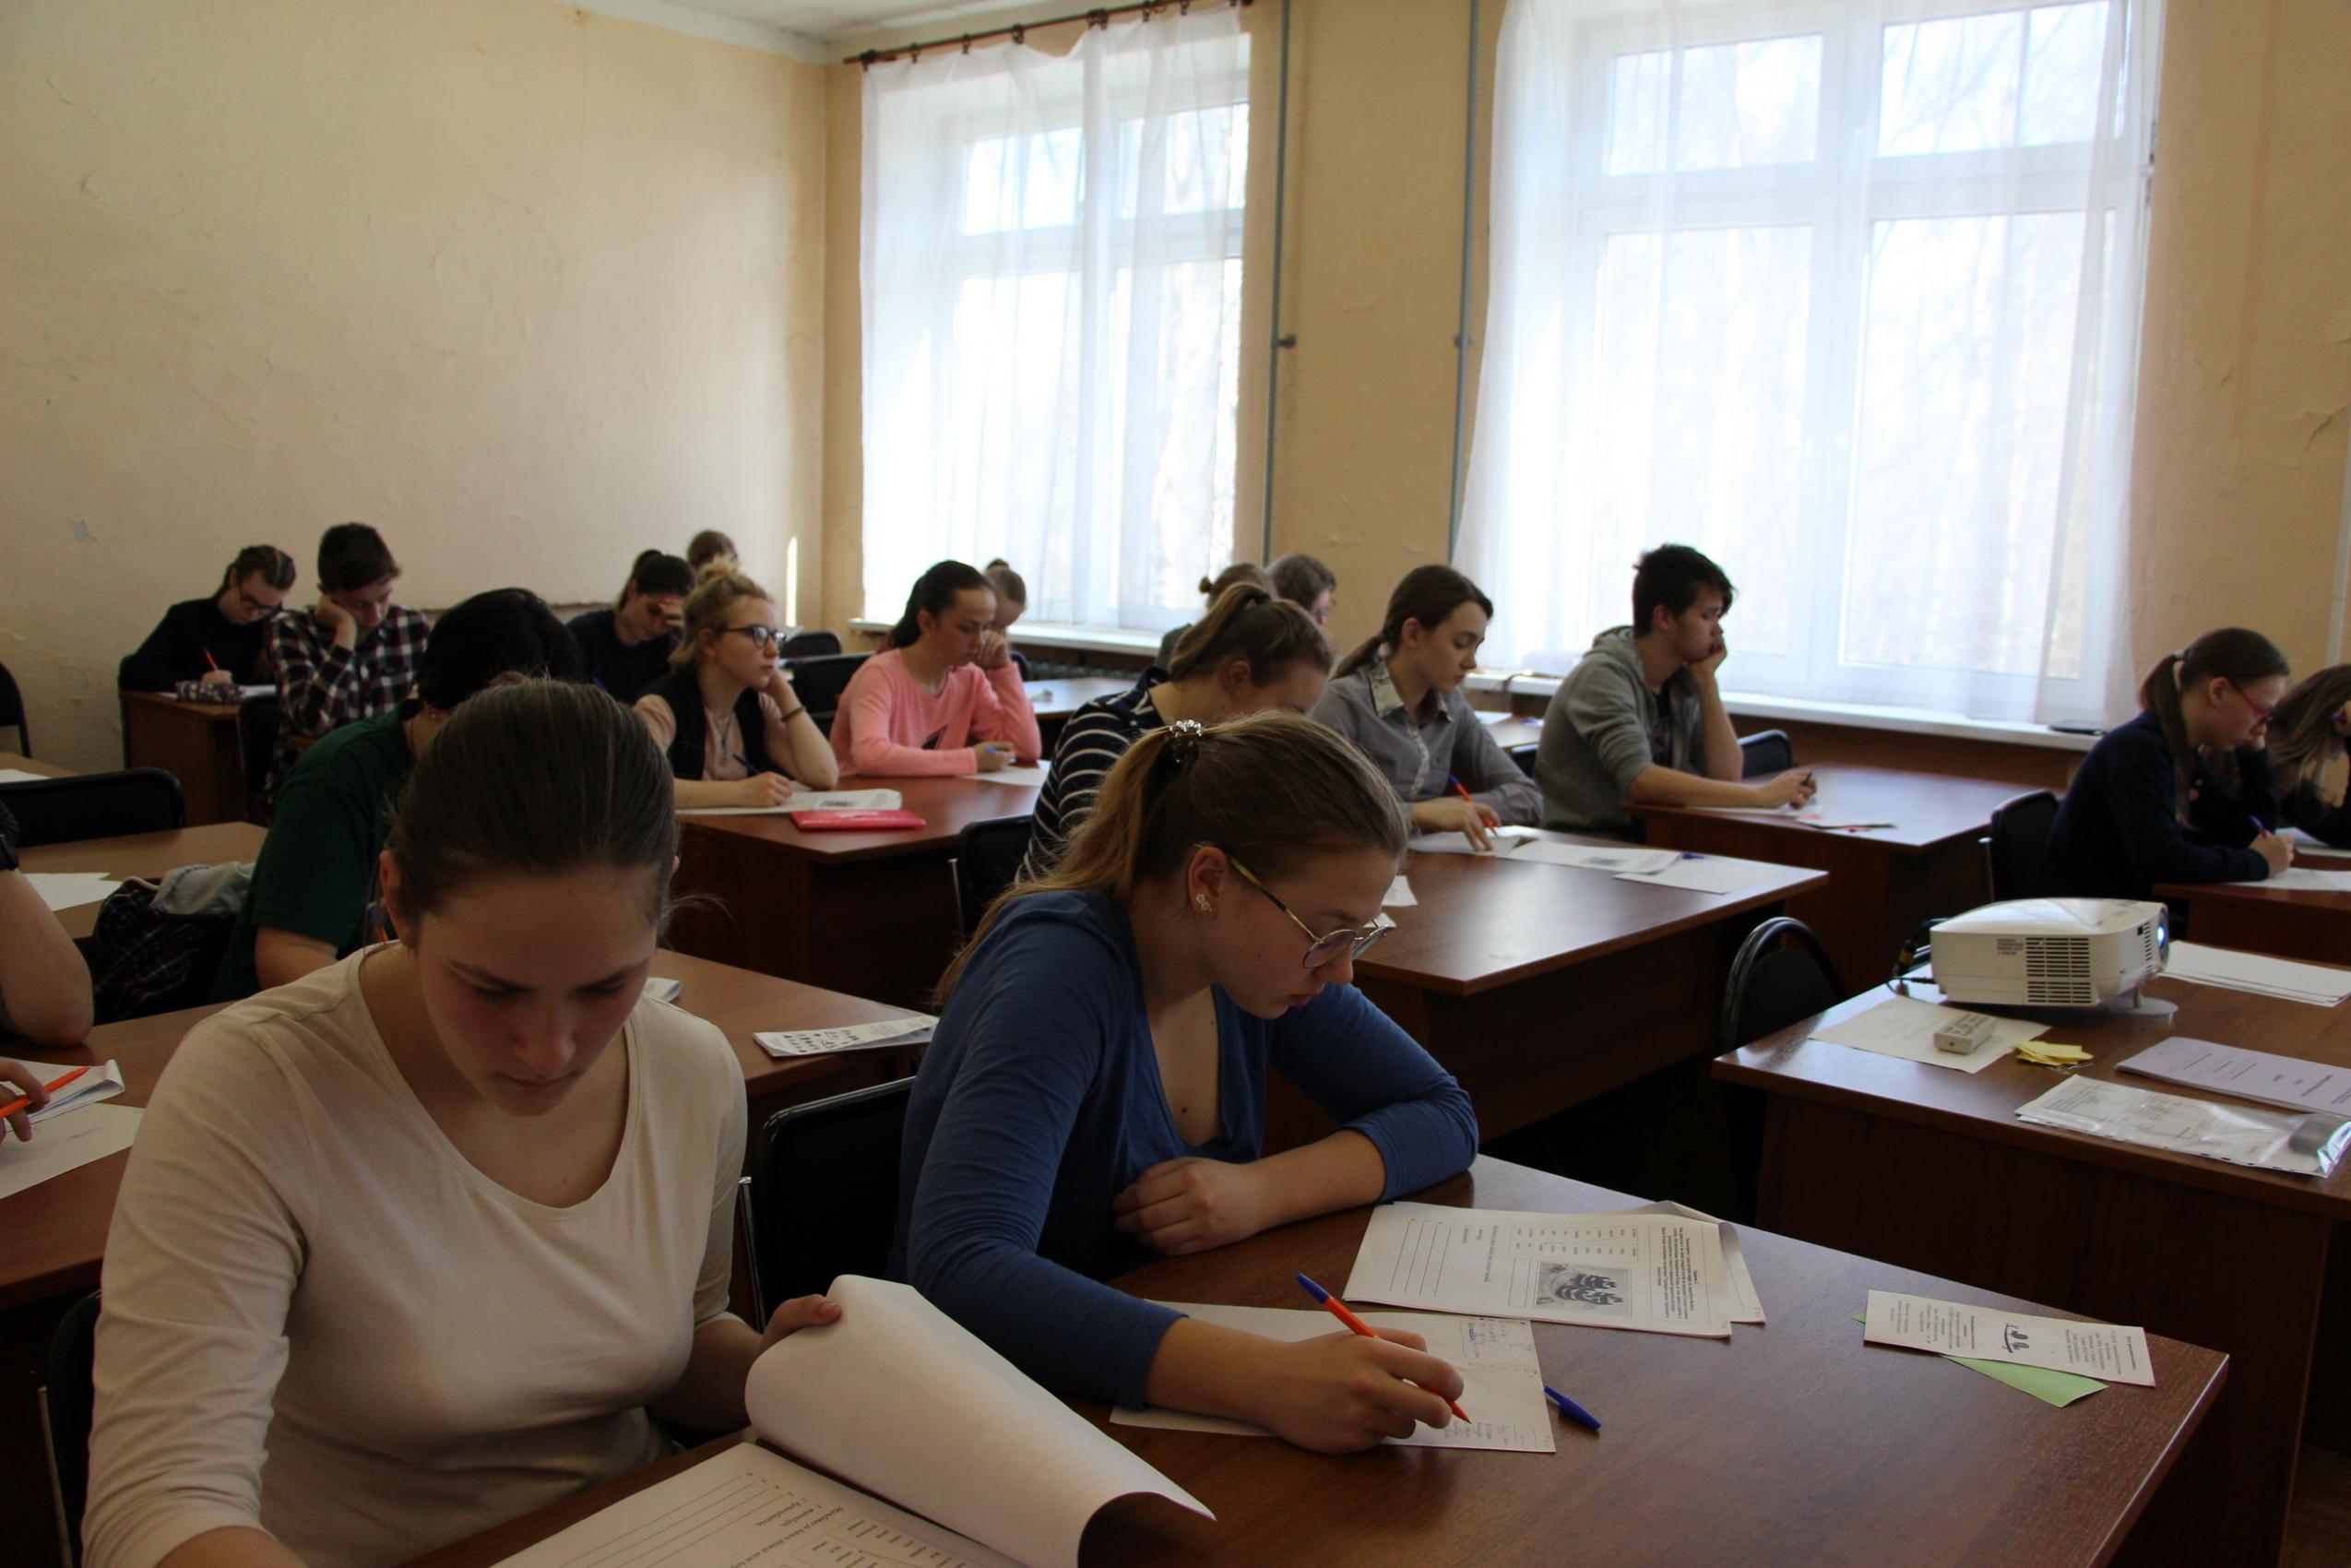 Venäjän opetuslain mukaan oppilaat voivat käydä koulua kahdessa vuorossa vain tavallisissa kouluissa. Lyseoiden ja kymnaasien oppilaat voivat opiskella vain aamuvuorossa. Kuva: Karjalan Sanomat